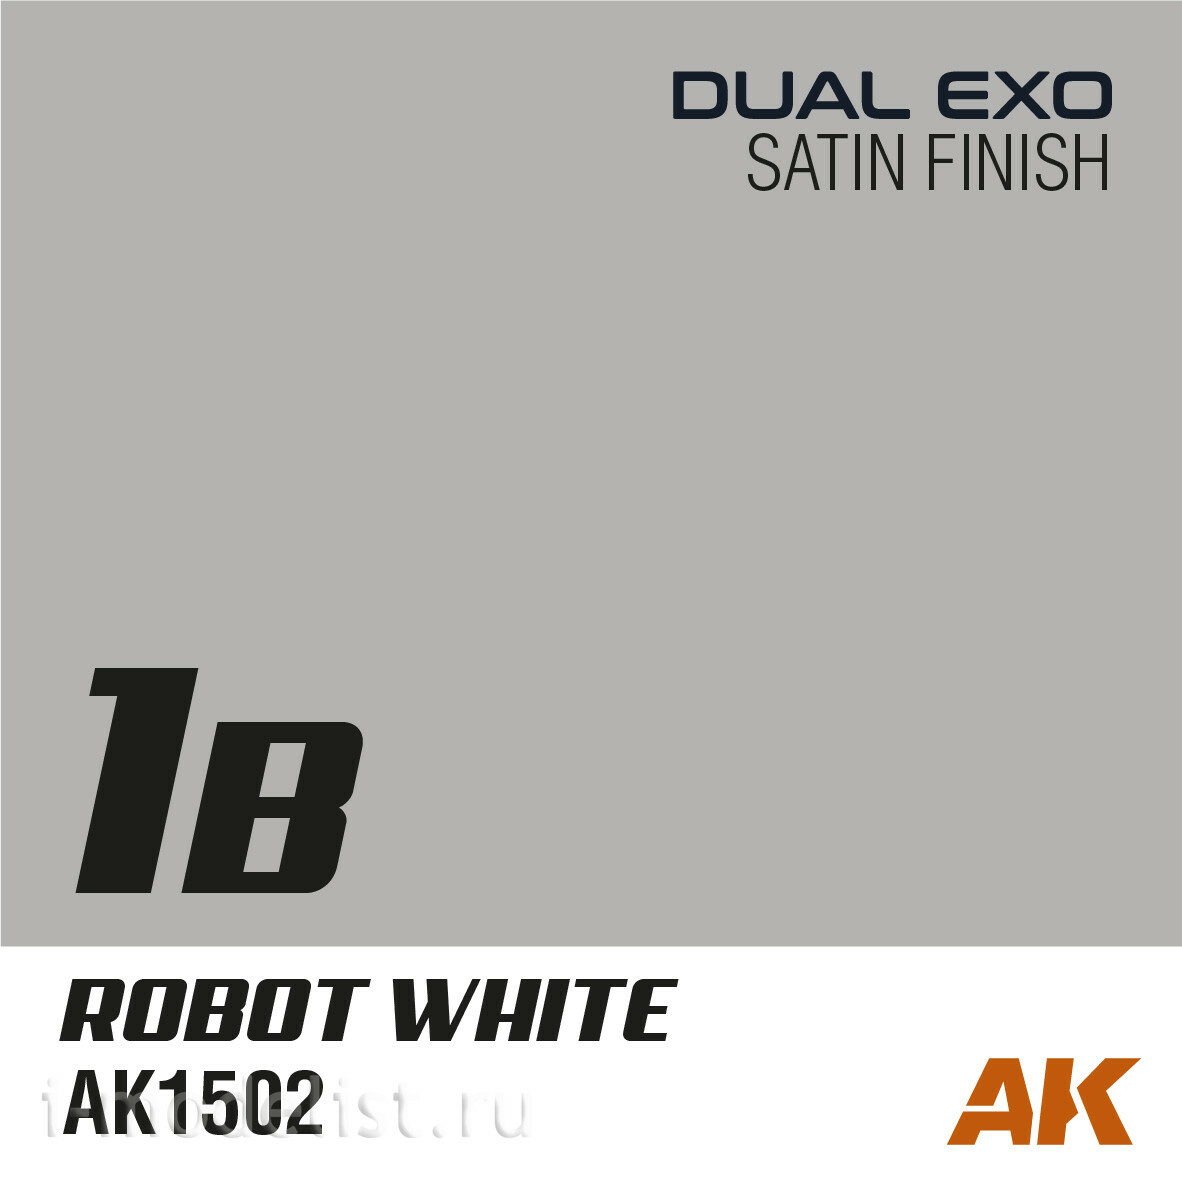 AK1502 AK Interactive Paint Dual Exo 1B - Robot white, 60 ml